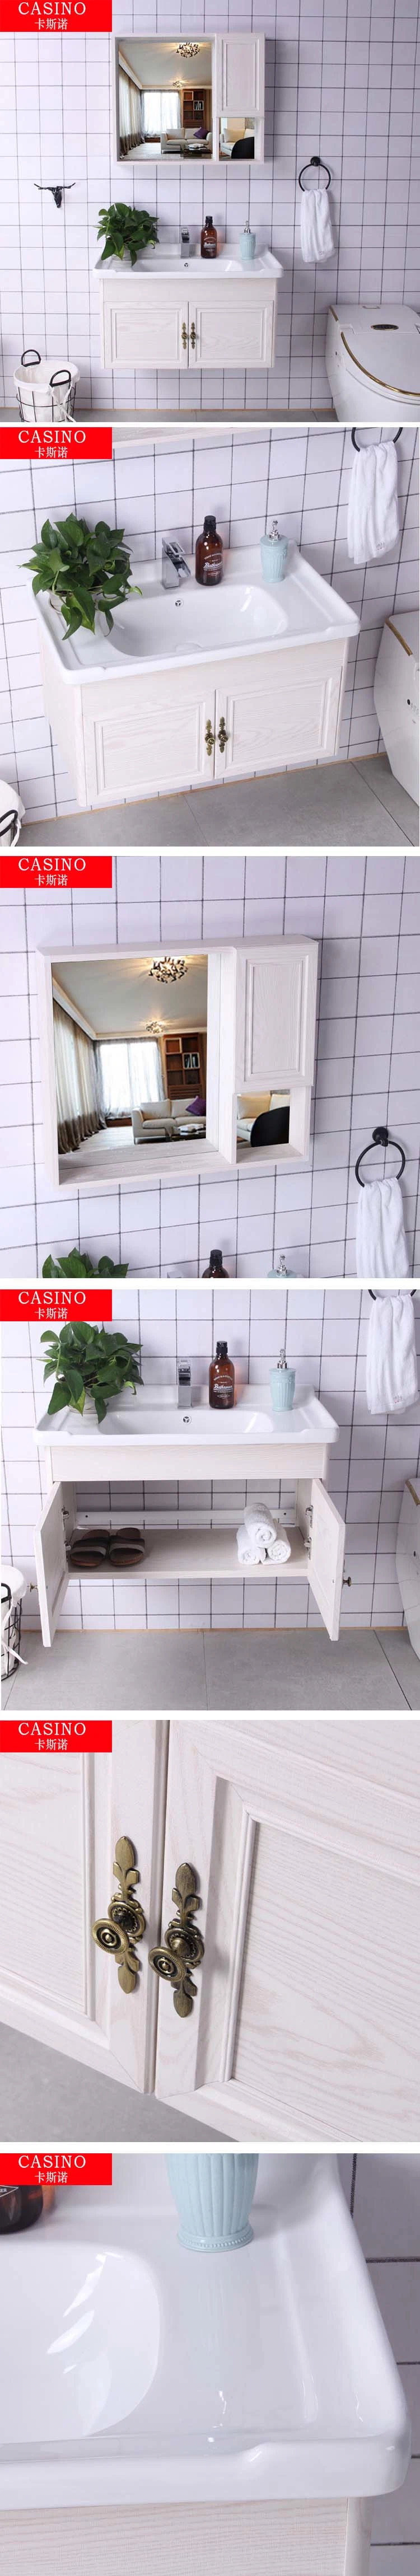 Bathroom Vanity Wash Basin Cabinets Bathroom Wall Cabinet